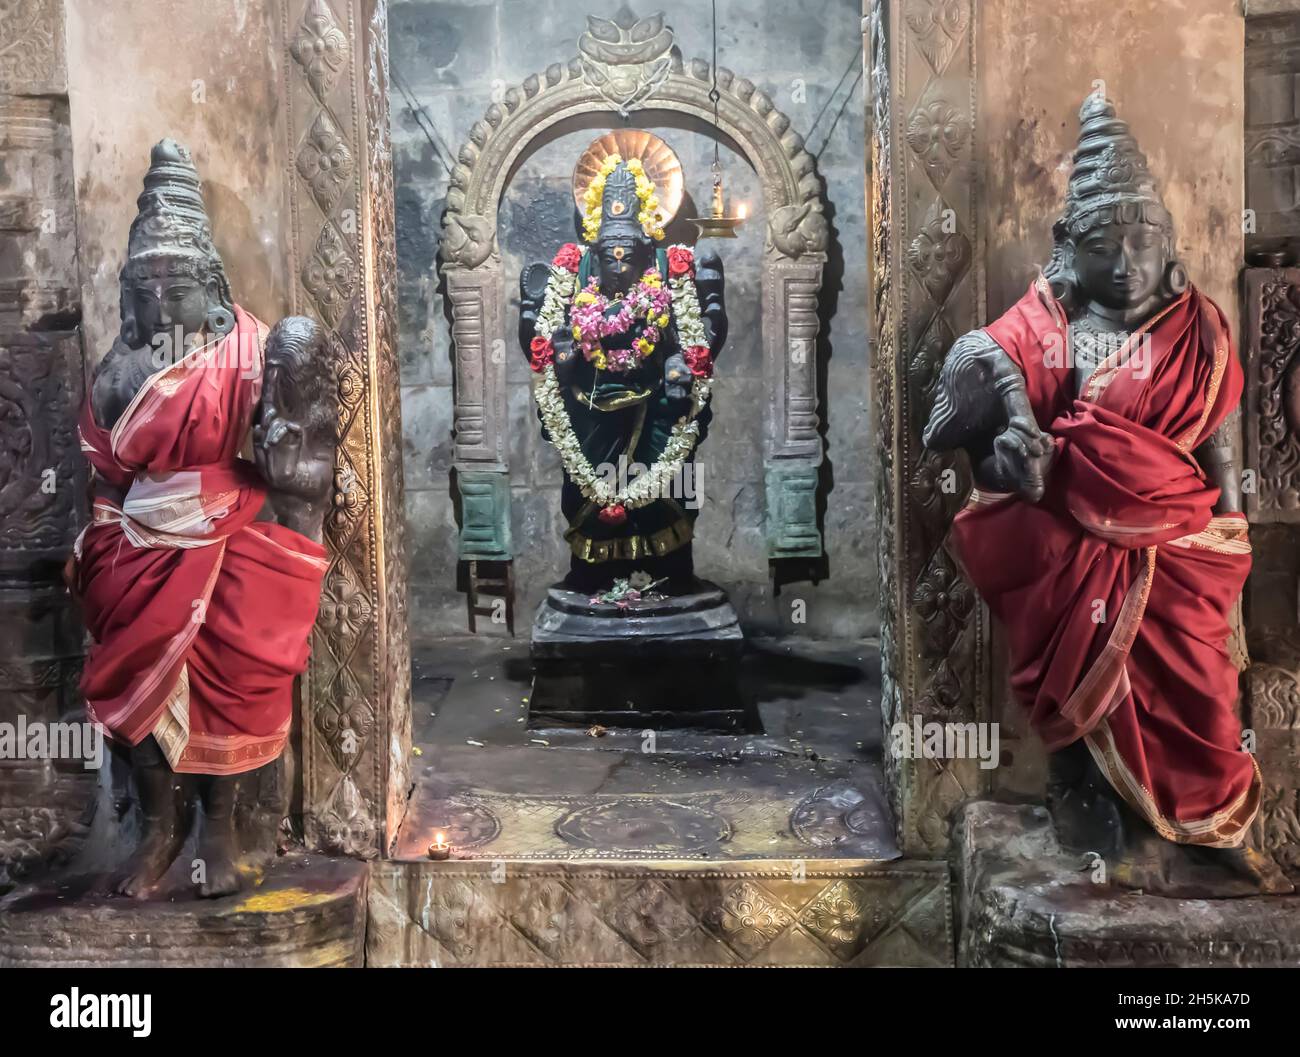 Alcova con statua della divinità indù in parete con statue guardiane avvolte in seta su entrambi i lati al Tempio di Airavatesvara dell'era Dravidiana di Chola Foto Stock